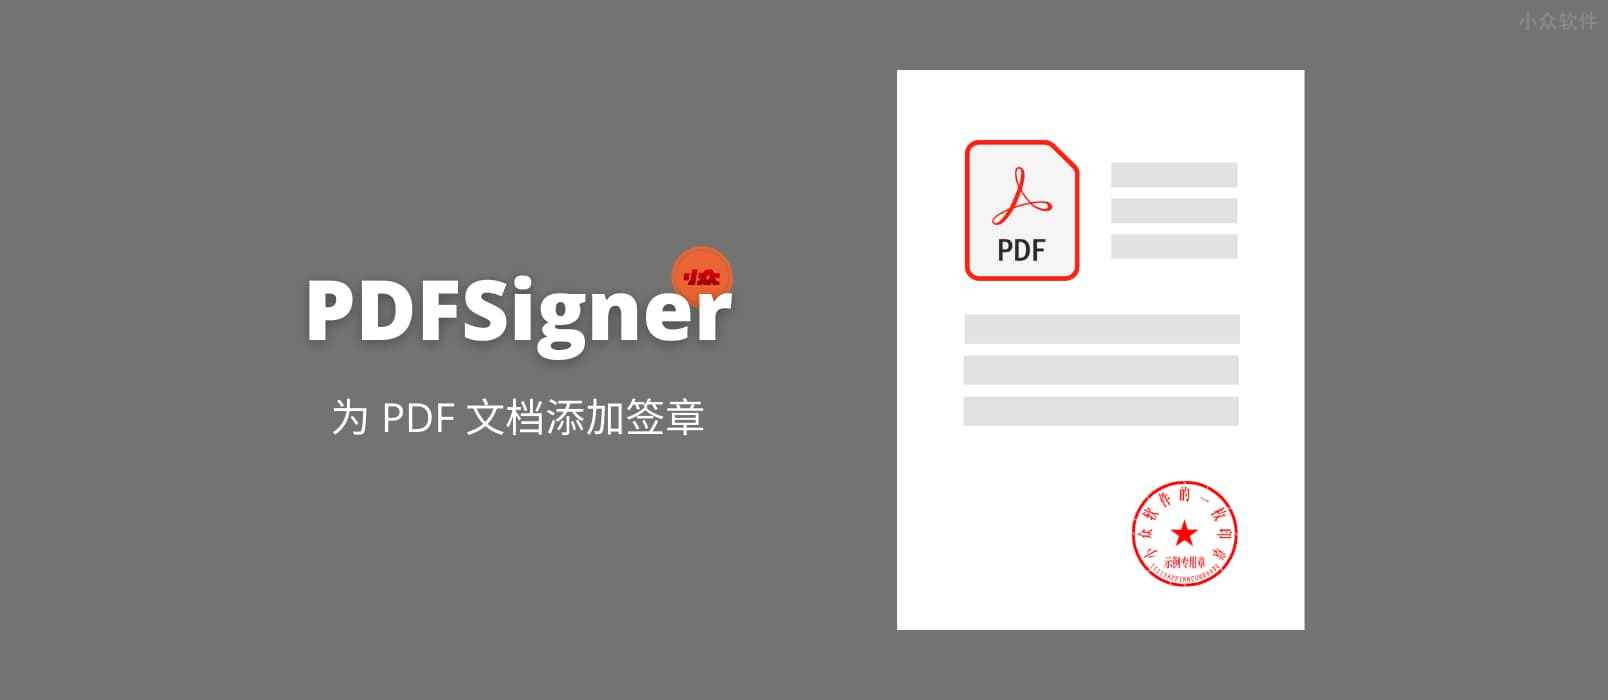 PDFSigner – 在线为 PDF 文档添加签章